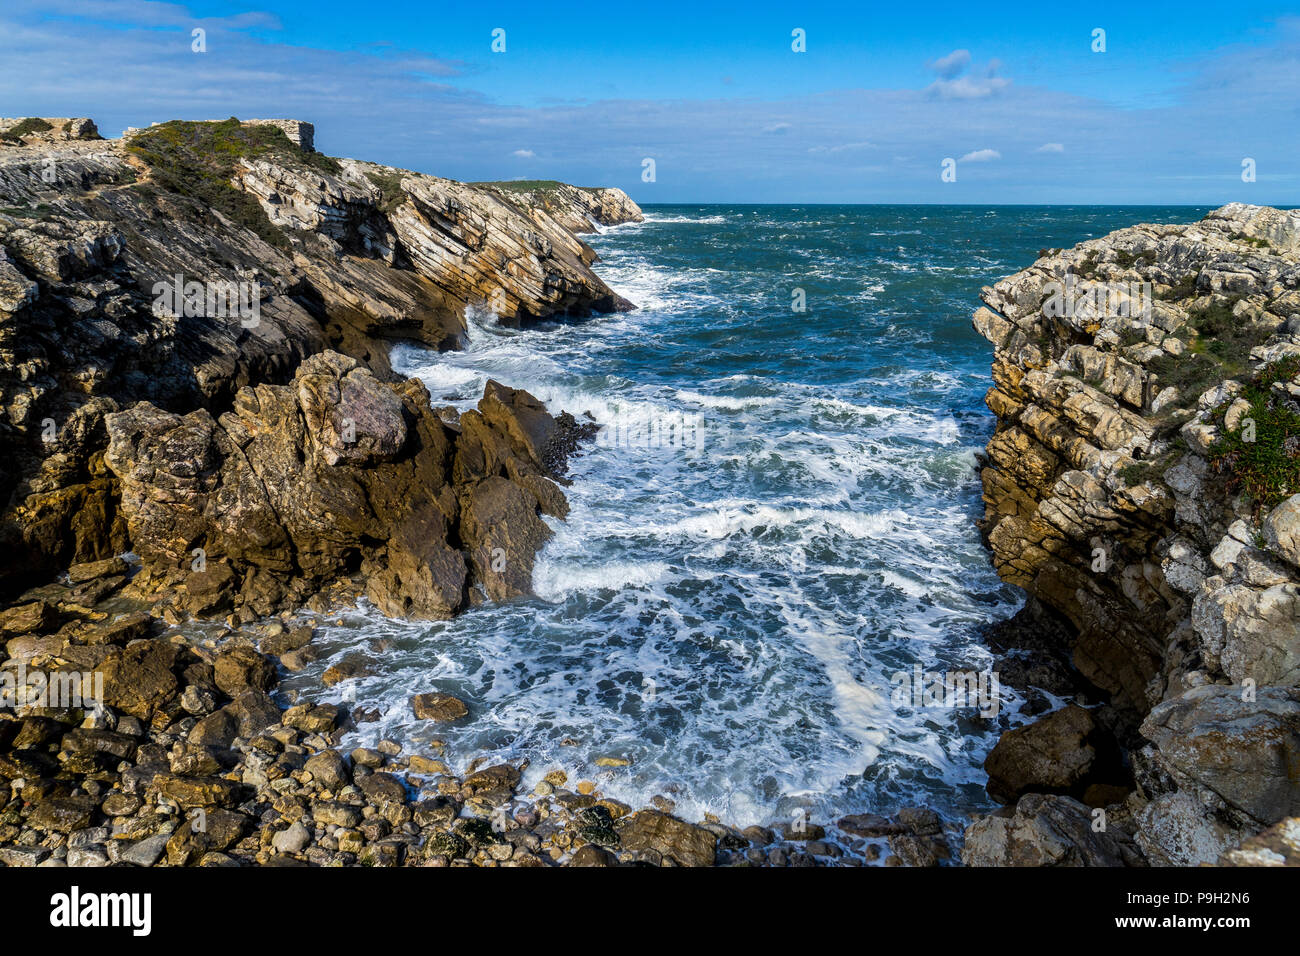 Péninsule de Baleal près de Peniche au Portugal. Mer Agitée se brisant sur les rochers Banque D'Images